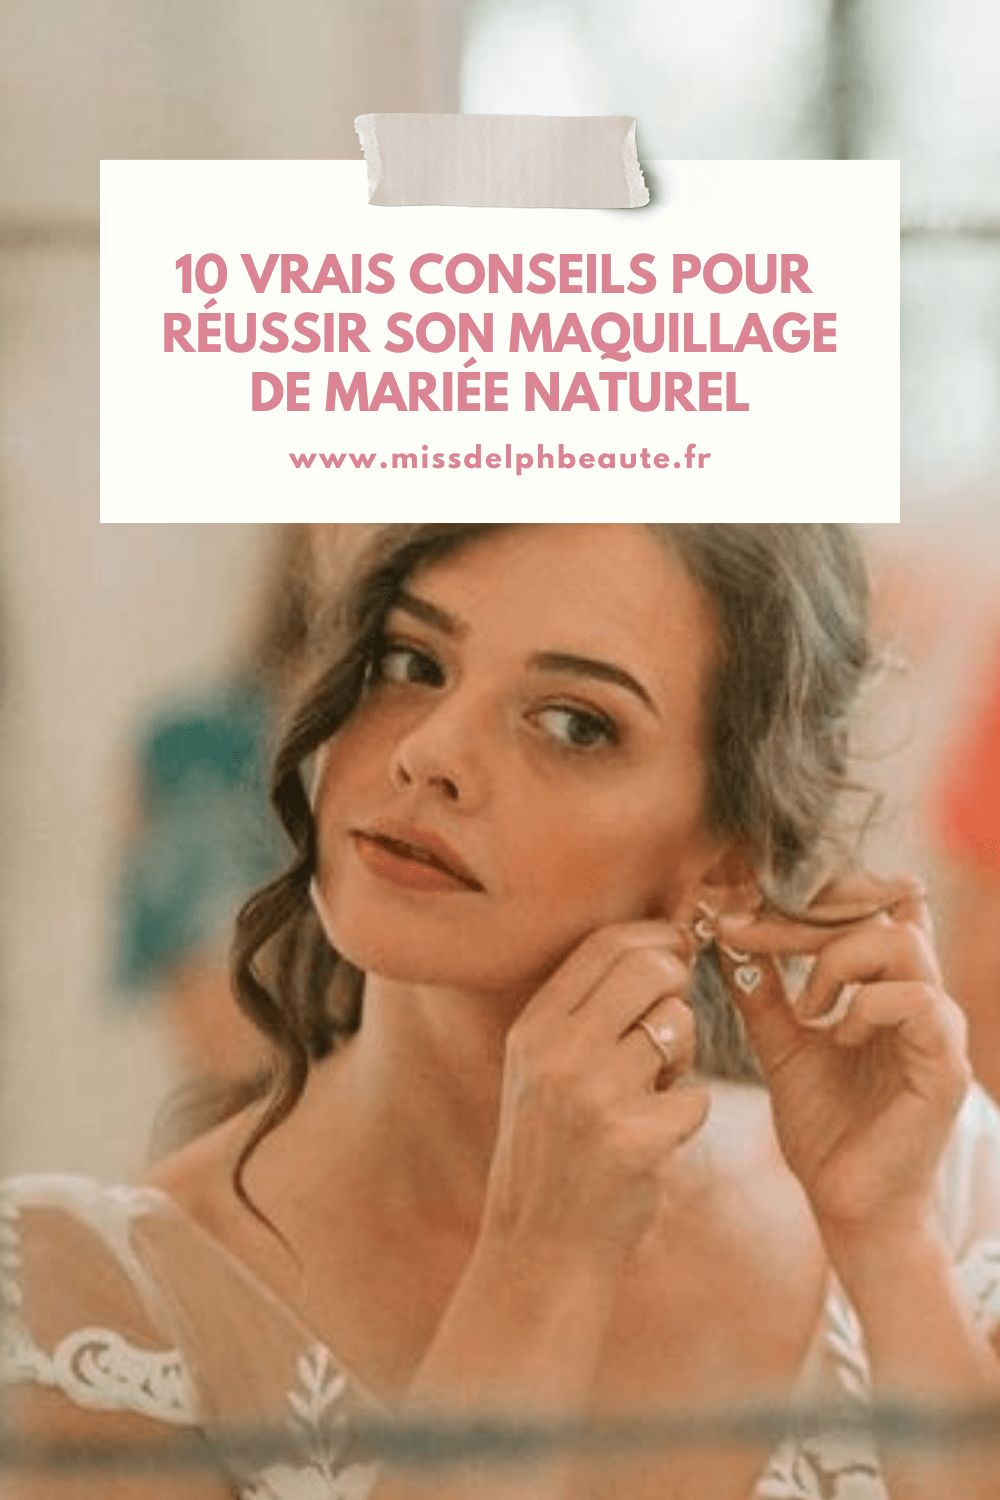 10 vrais conseils pour réussir son maquillage de mariée naturel